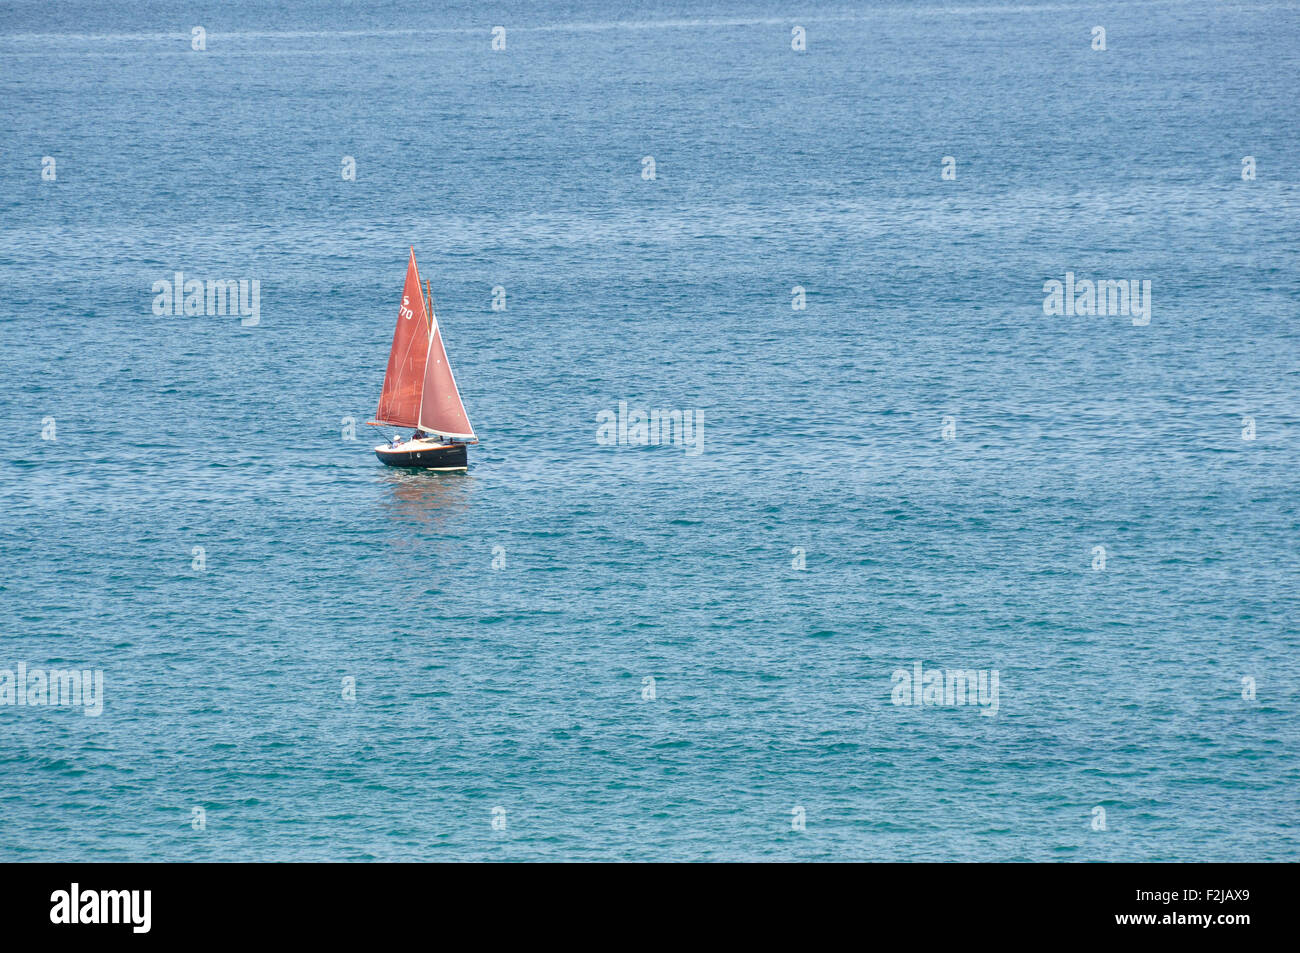 Voiles rouge sur une mer bleue - un bateau à voile - red sails - seul sur une mer bleue profonde - Soleil - mer calme Banque D'Images